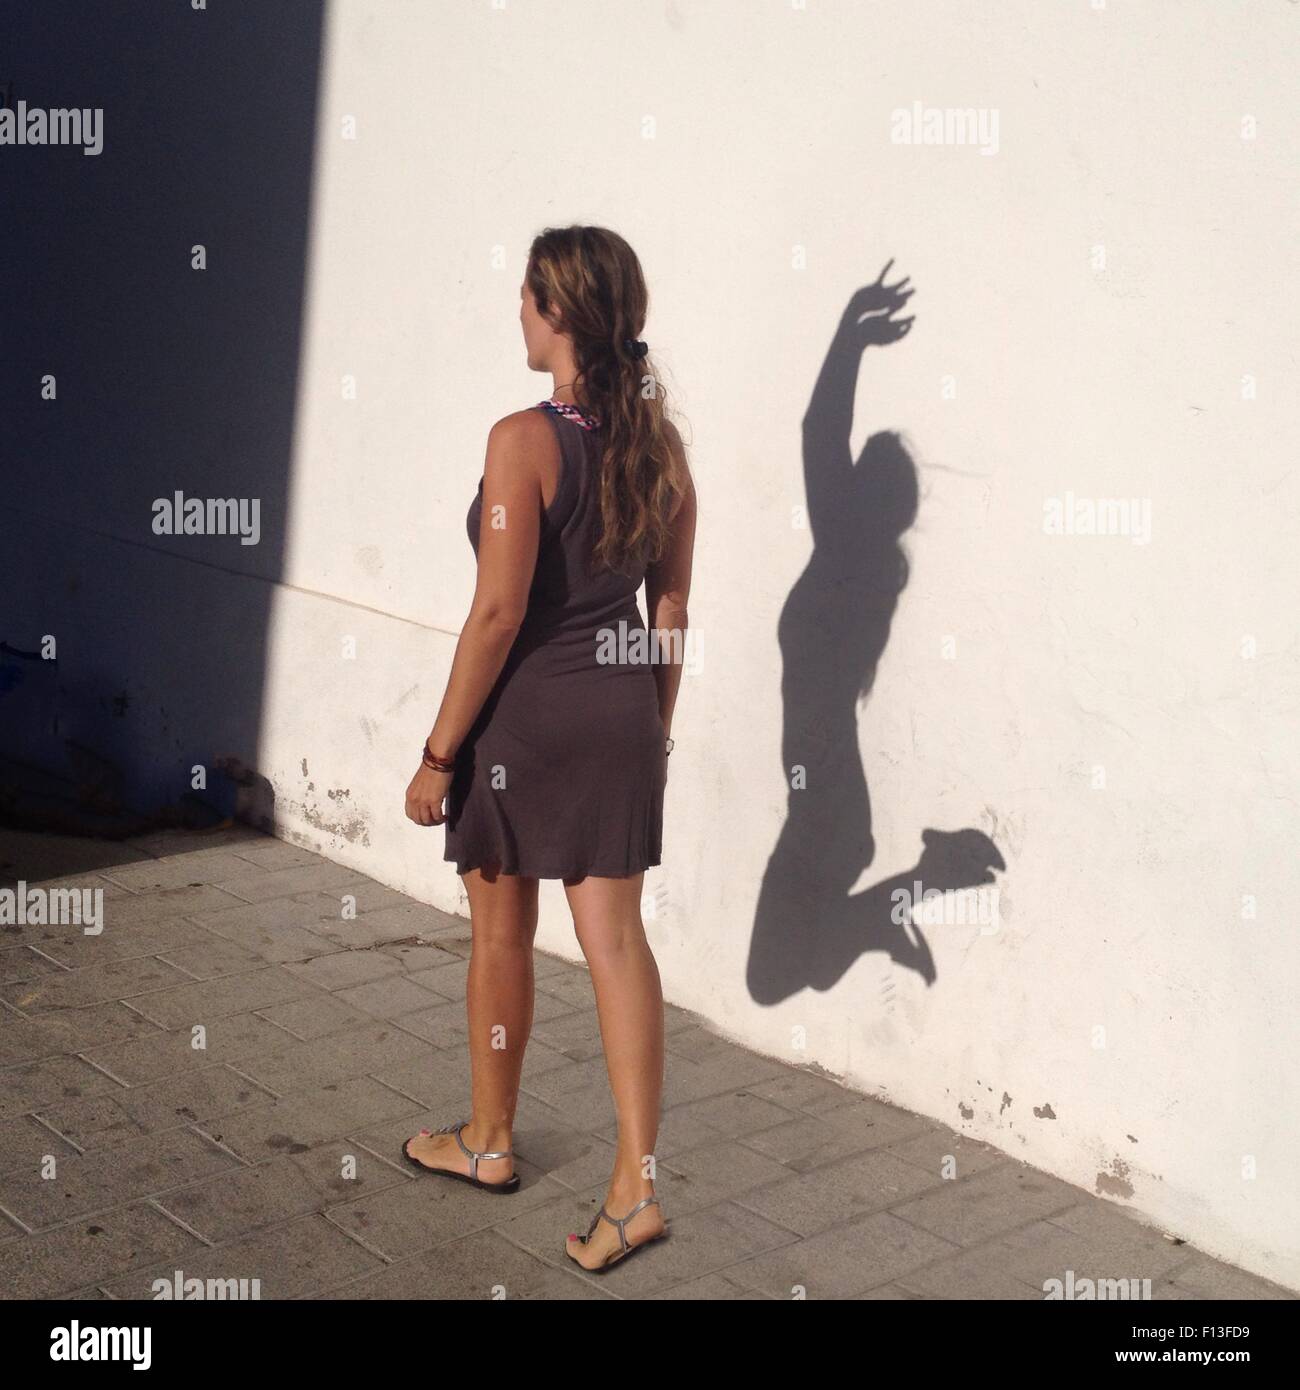 Frau, die an einer Wand vorbeigeht, mit ihrem Alter Ego Schatten, der vor Freude springt Stockfoto